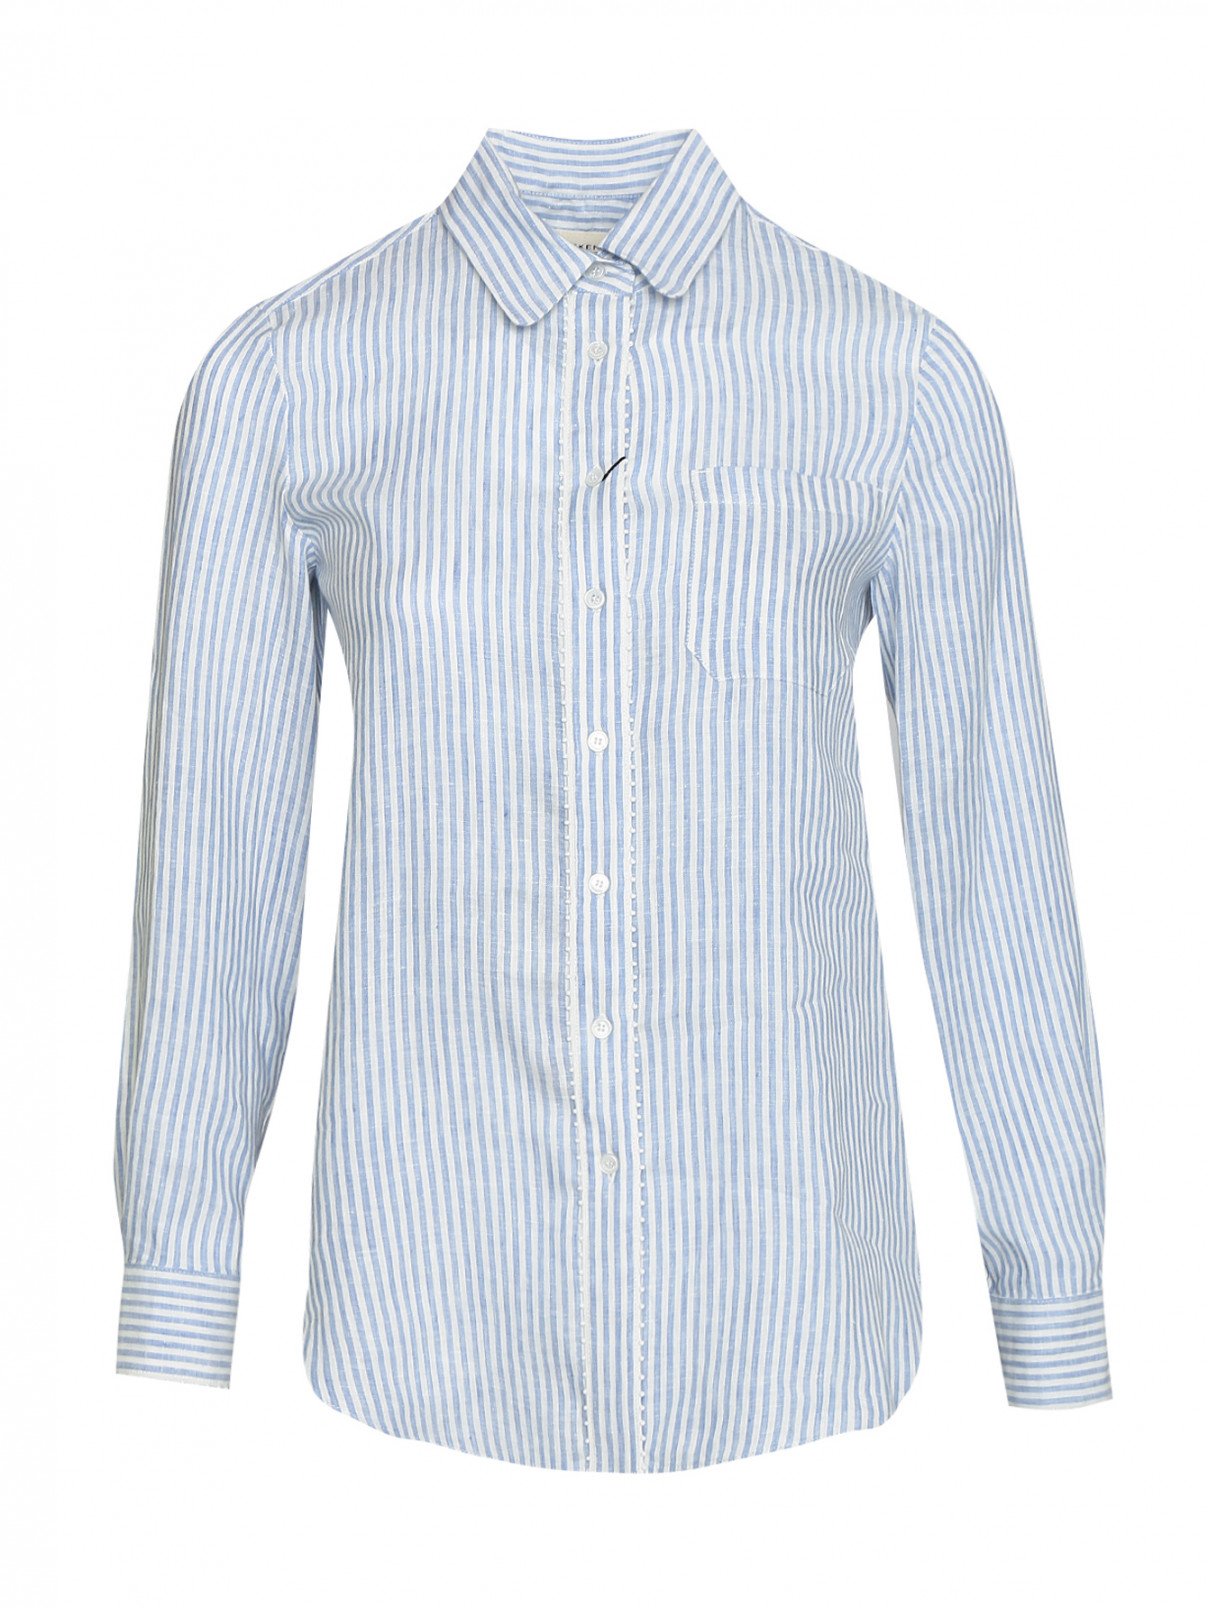 Рубашка из льна в полоску Weekend Max Mara  –  Общий вид  – Цвет:  Синий